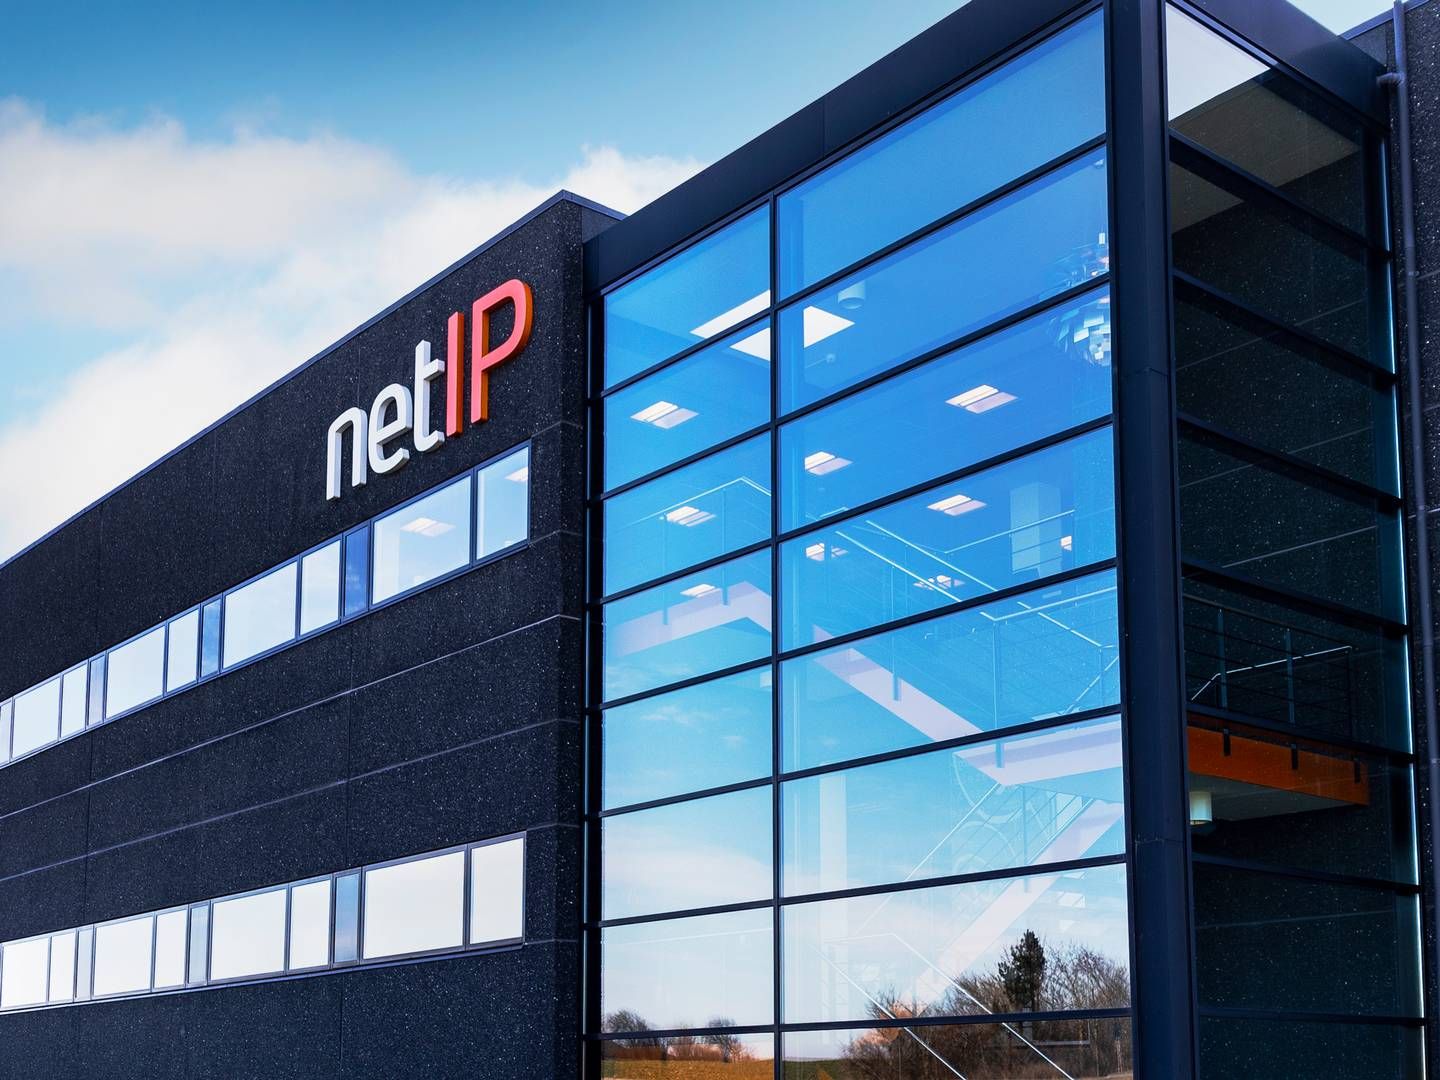 Netip har i dag kontorer i otte danske byer. Her er det selskabets kontor i Thisted, der er det største og ældste. Netip har mål om at blive landsdækkende, og en forøgelse af kontorantallet er et naturligt led i selskabets vækststrategi | Foto: Netip / Pr